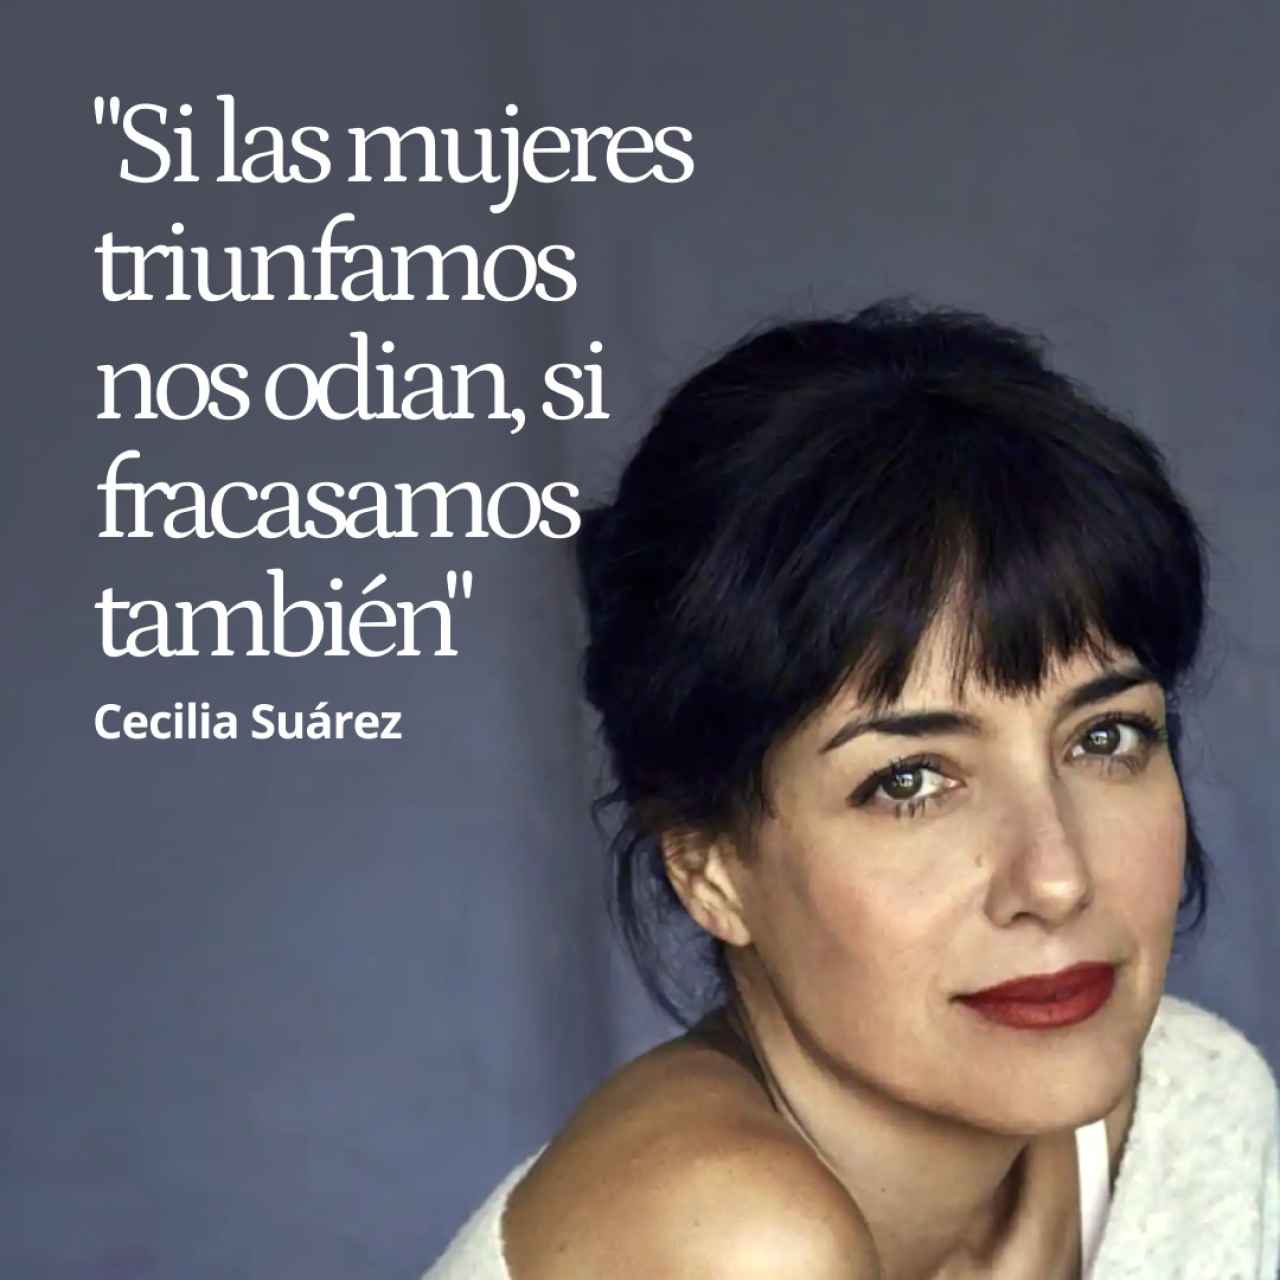 La actriz Cecilia Suárez, un ejemplo de arte e insumisión: "Si las mujeres triunfamos nos odian, si fracasamos también"